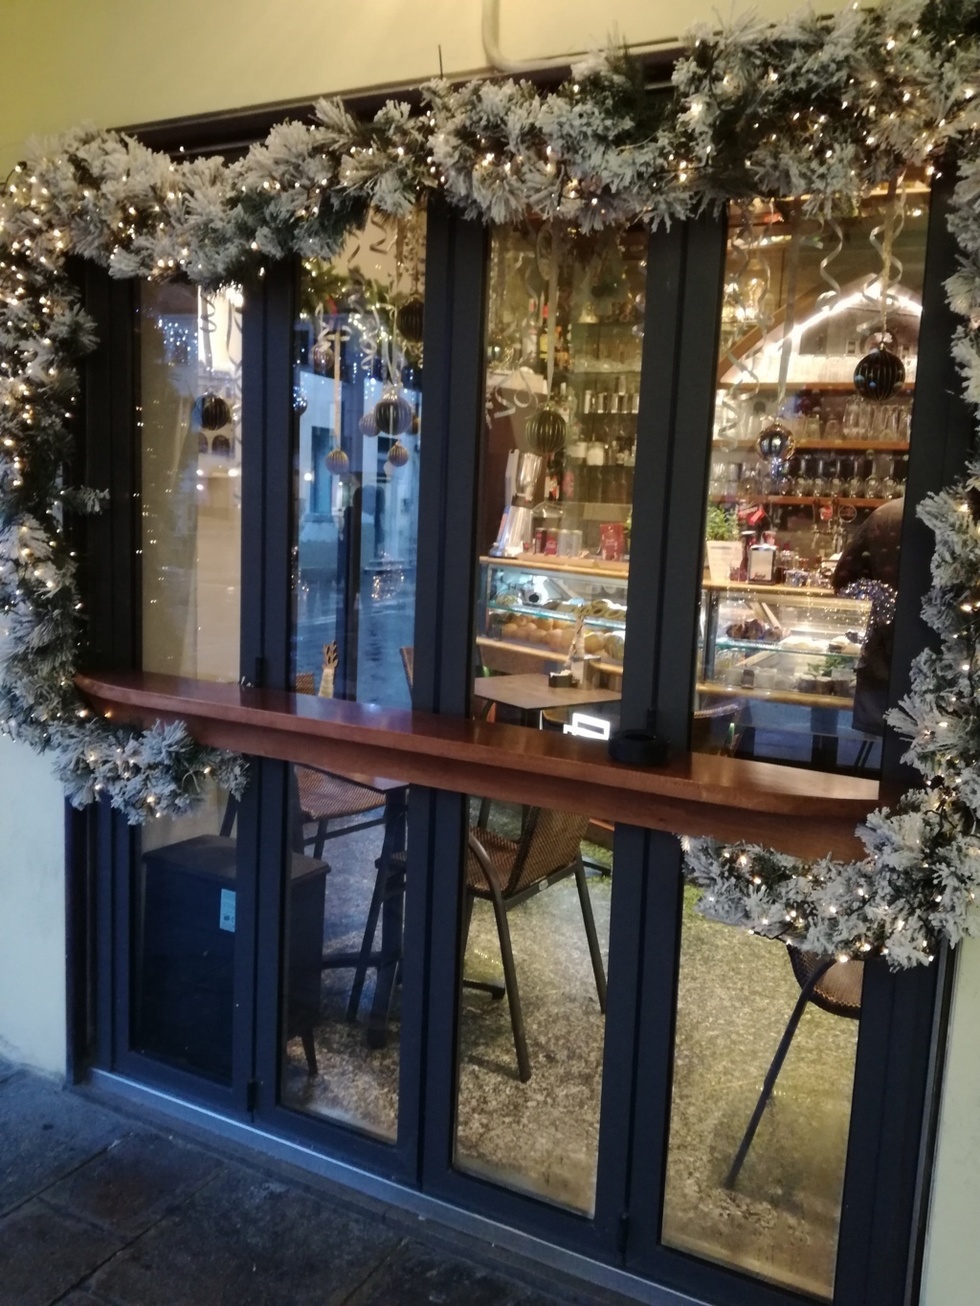 Bar Commercio - Piazza Ferretto